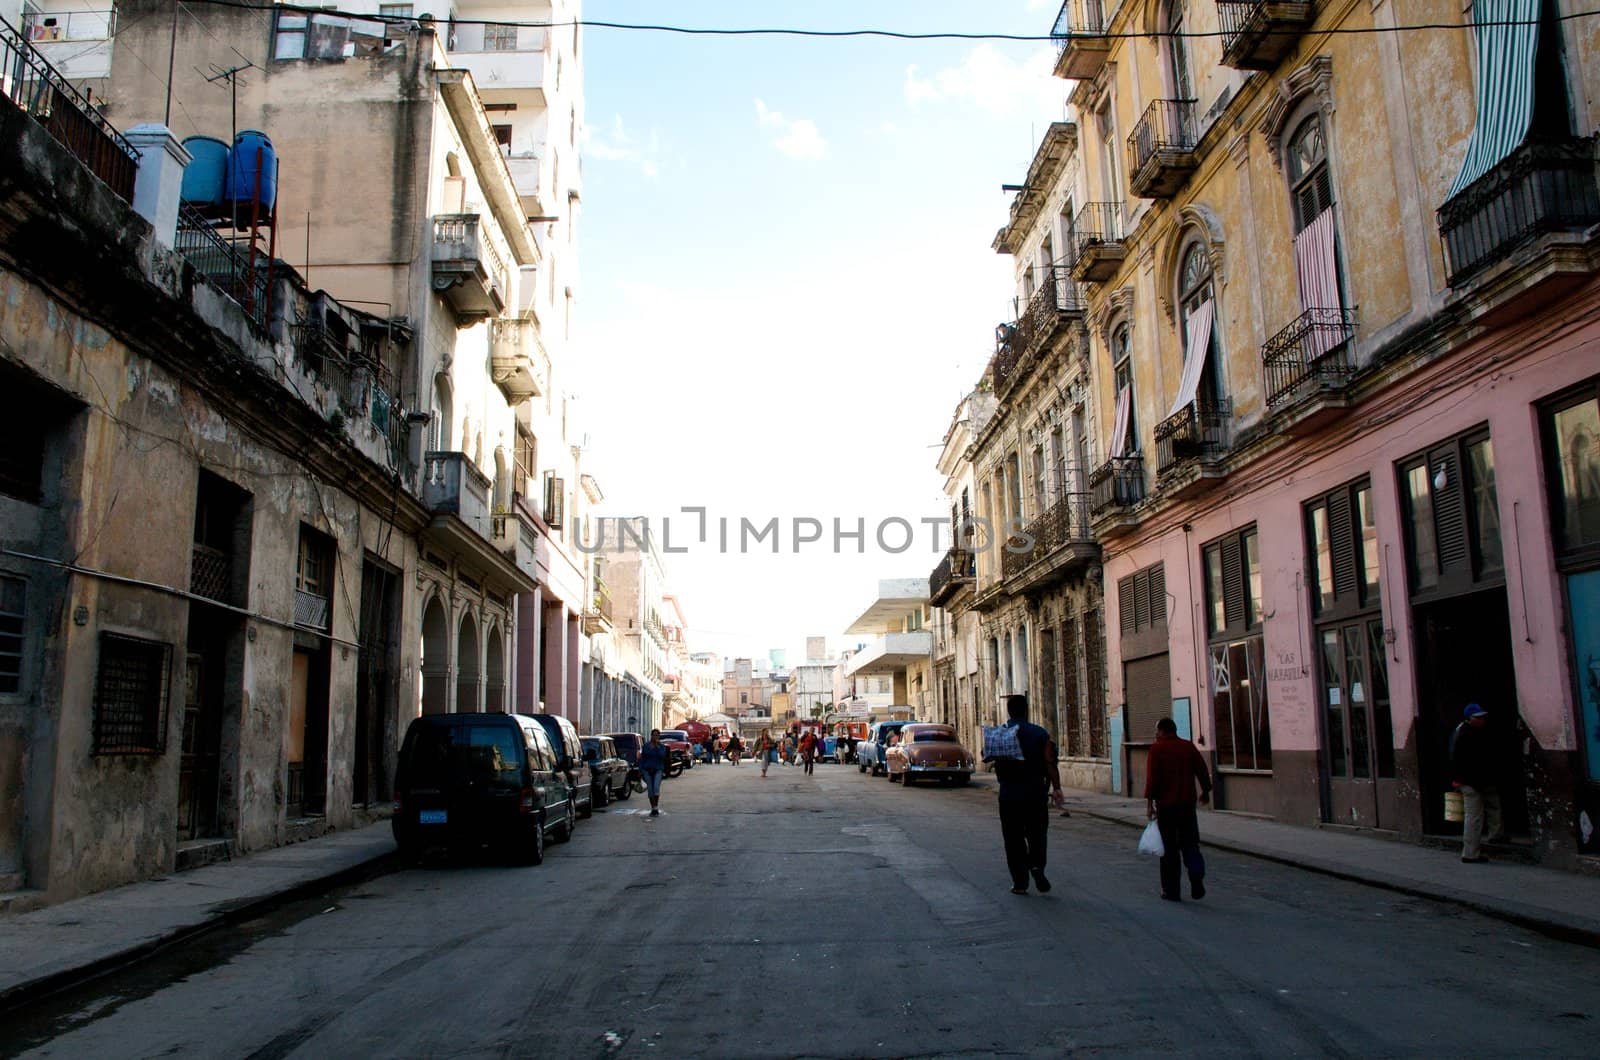 Street scenes of Havana, Cuba